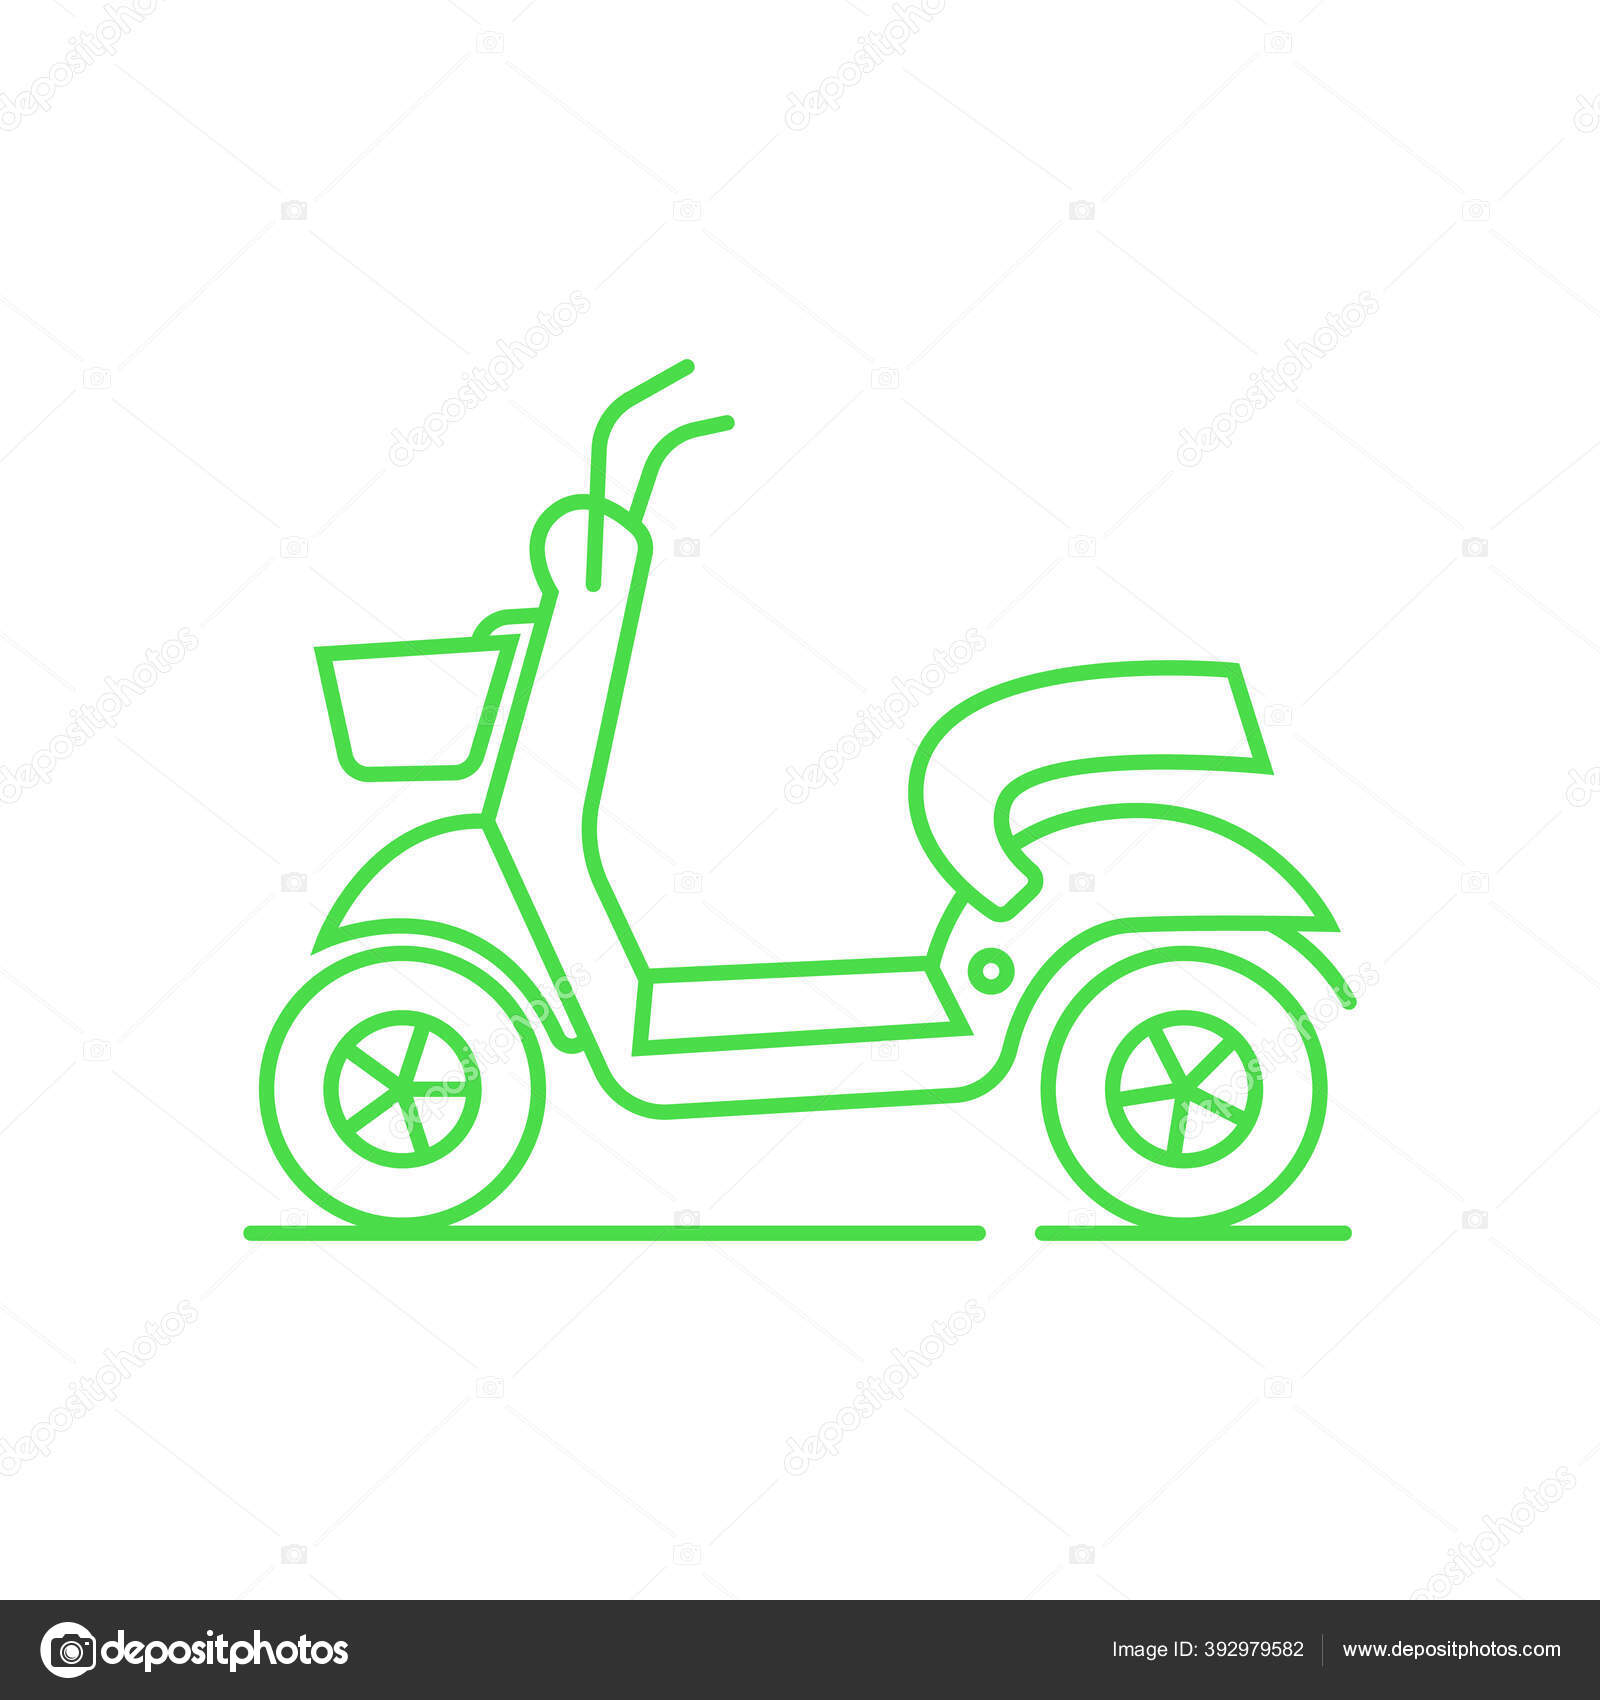 绿线图标租赁摩托车应用或服务租赁摩托车时常用的象形文字城市标志复古自行车隔离在白色背景快速食品递送的经典风格轮廓